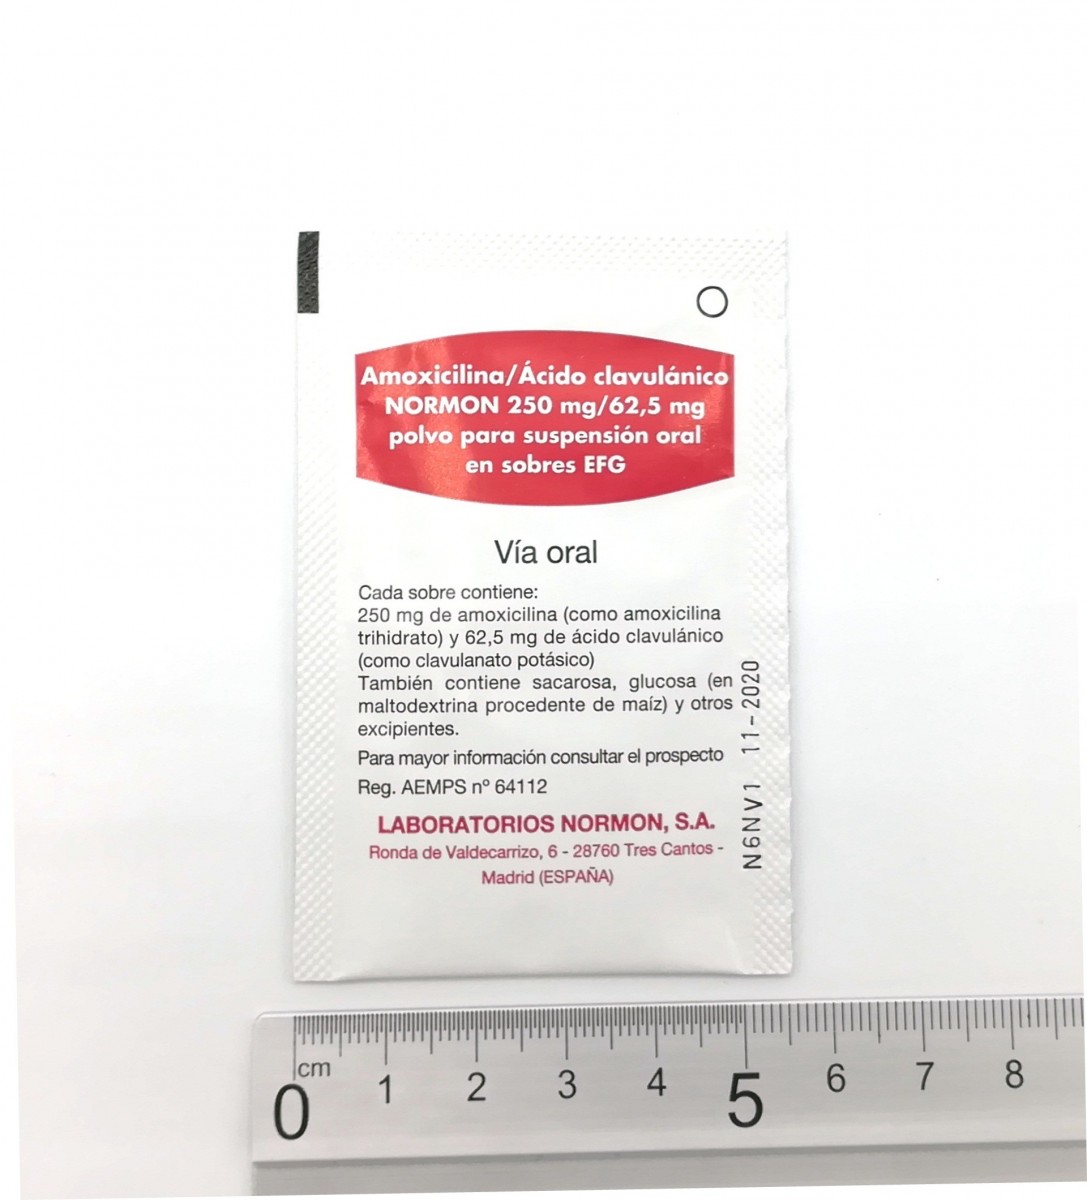 AMOXICILINA/ACIDO CLAVULANICO NORMON 250 mg/62,5 mg  POLVO PARA SUSPENSION ORAL EN SOBRES EFG, 24 sobres fotografía de la forma farmacéutica.